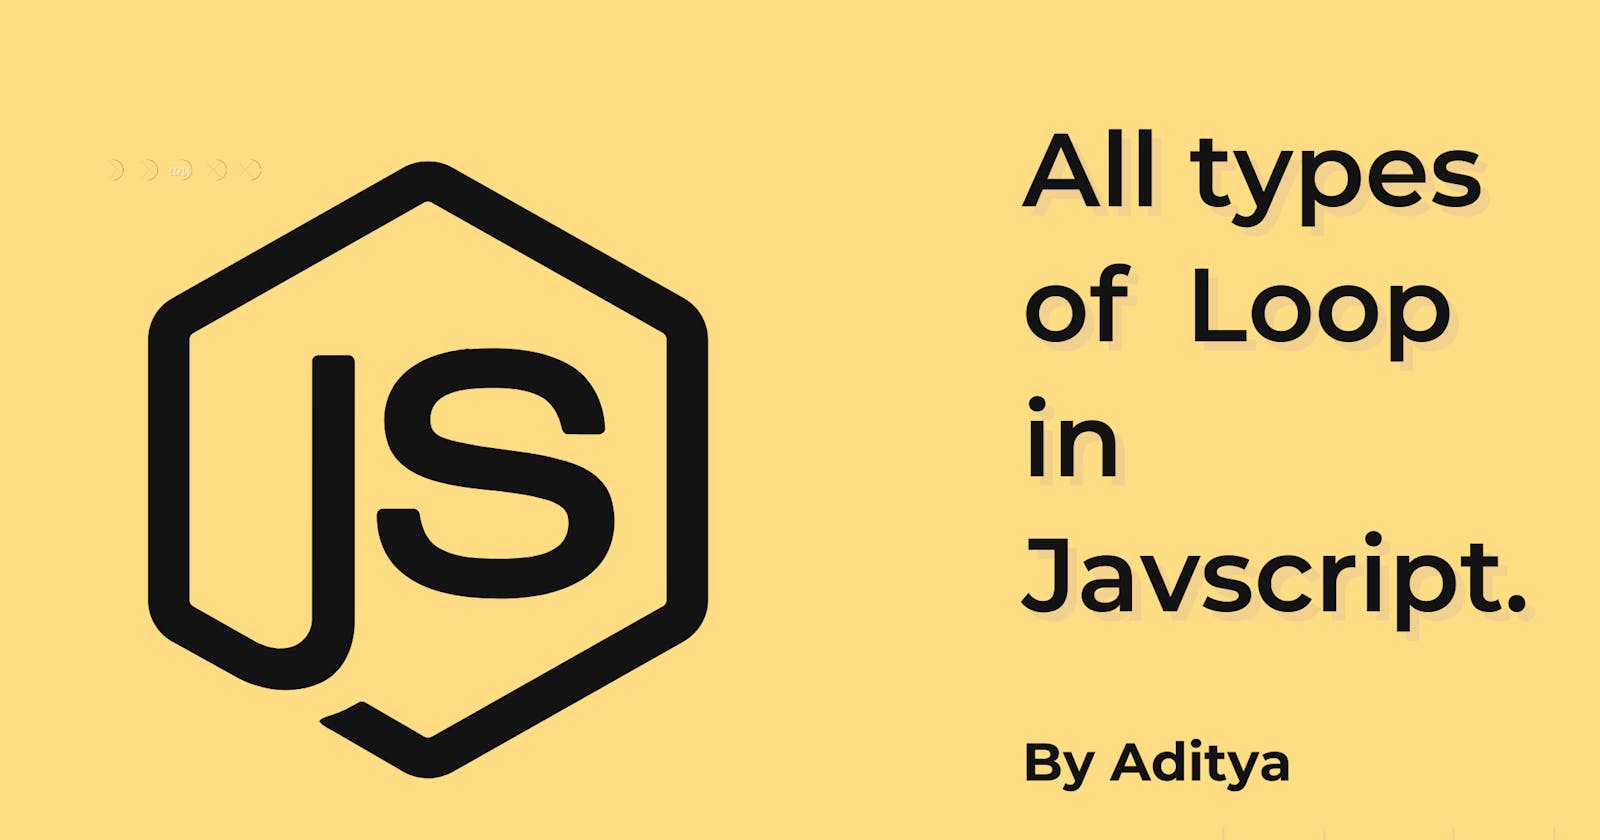 Loop and type of loop in JavaScript.